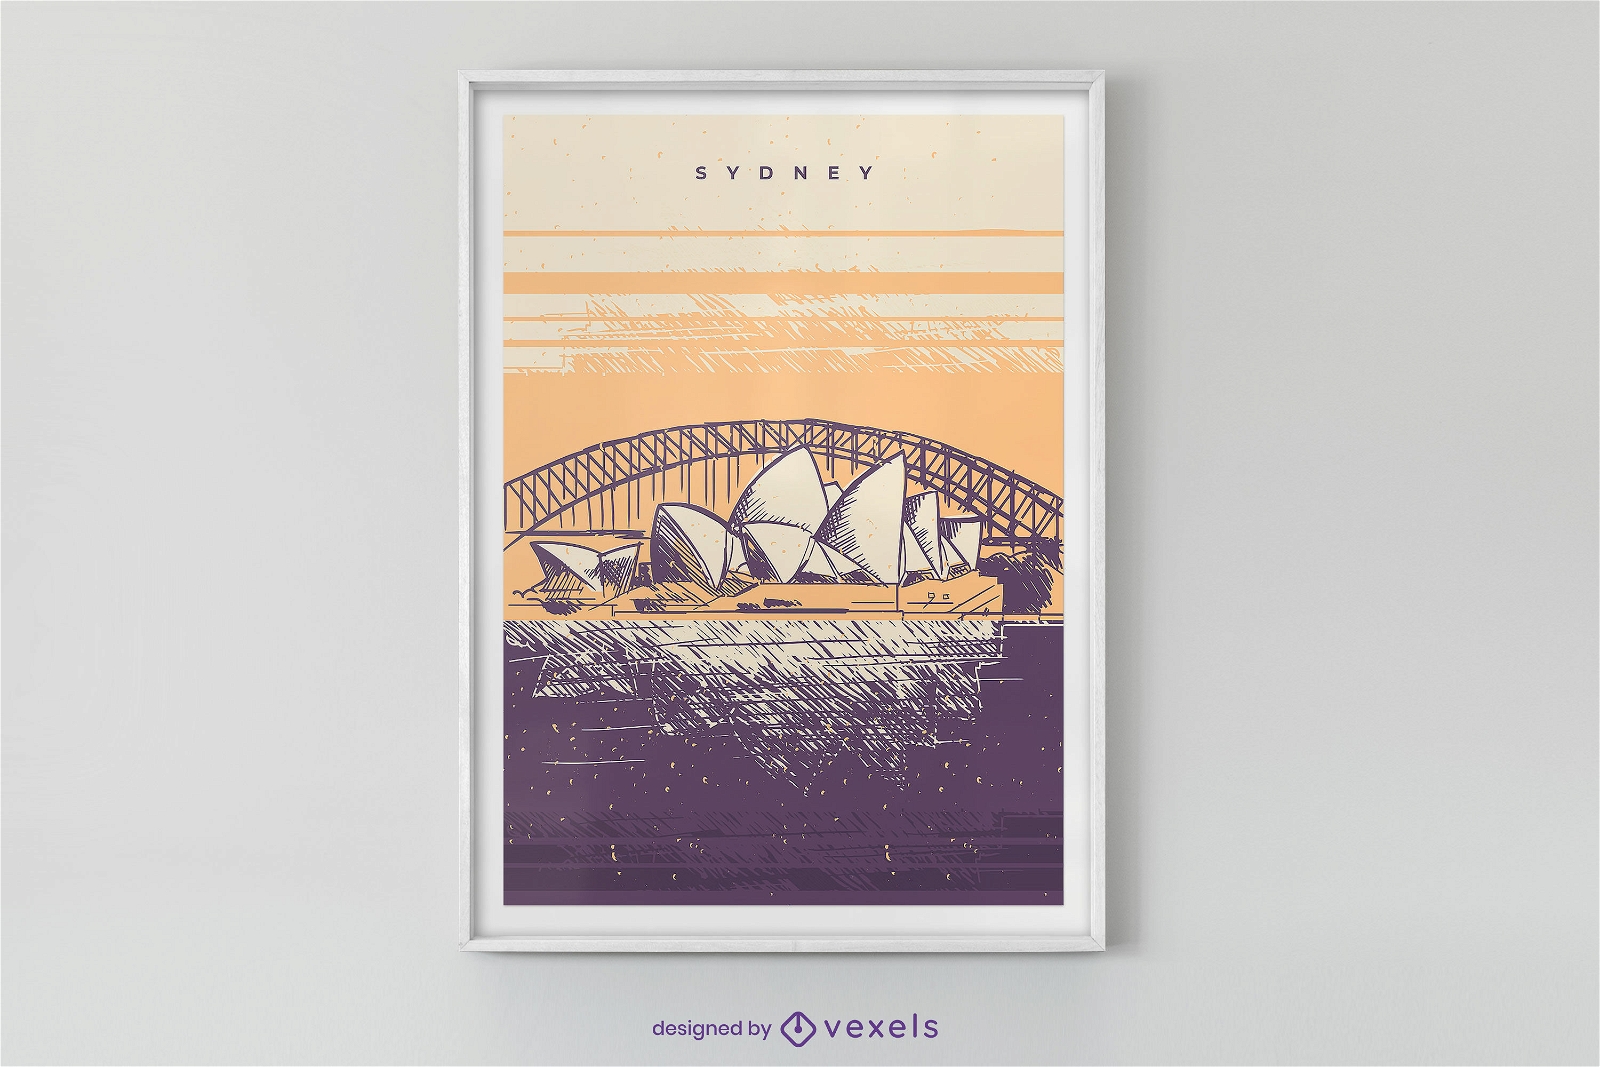 Sydney landscape poster design